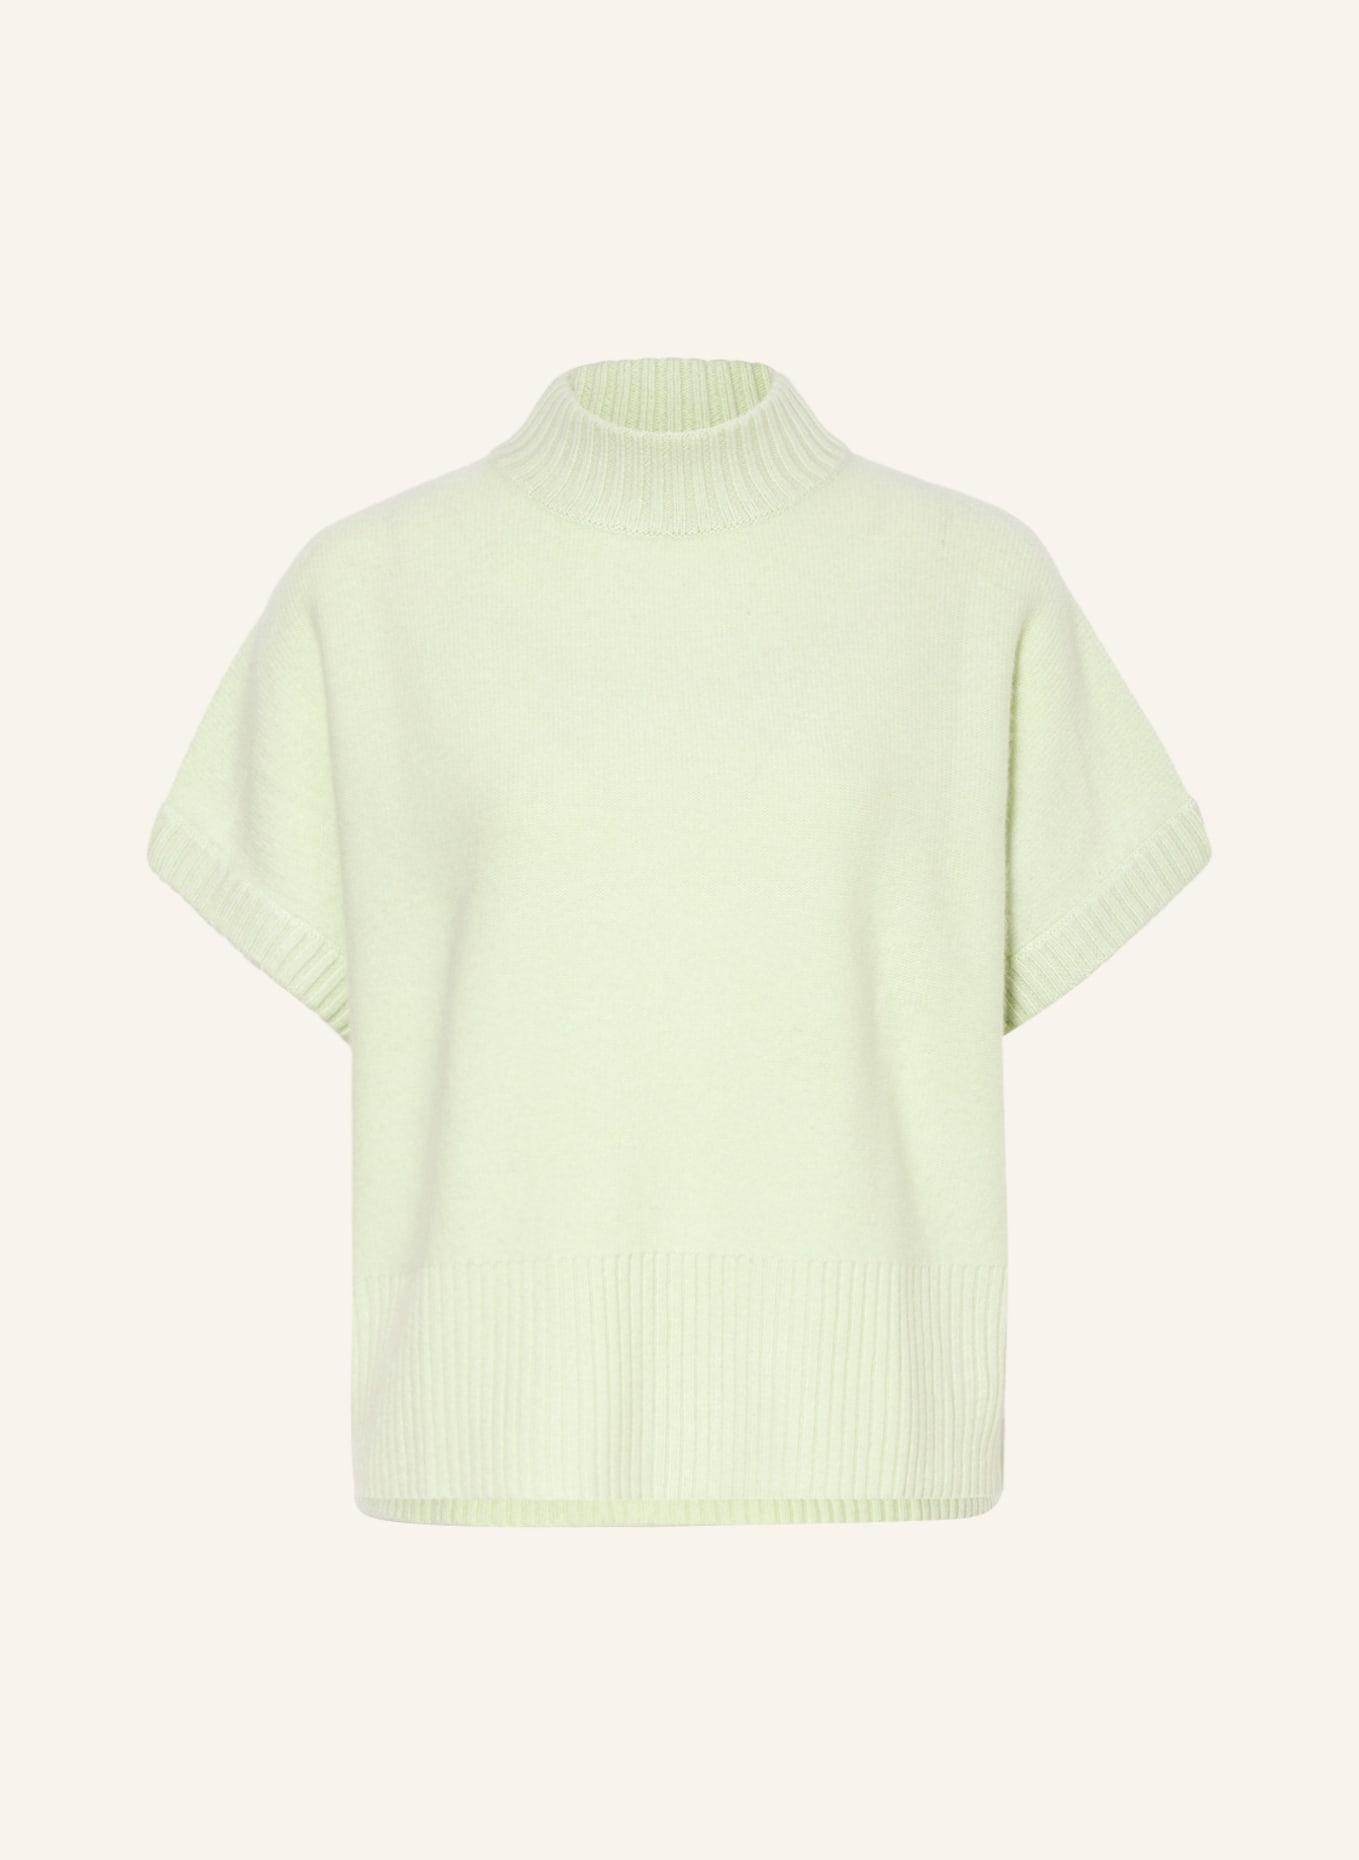 lilienfels Cashmere sweater vest, Color: MINT (Image 1)